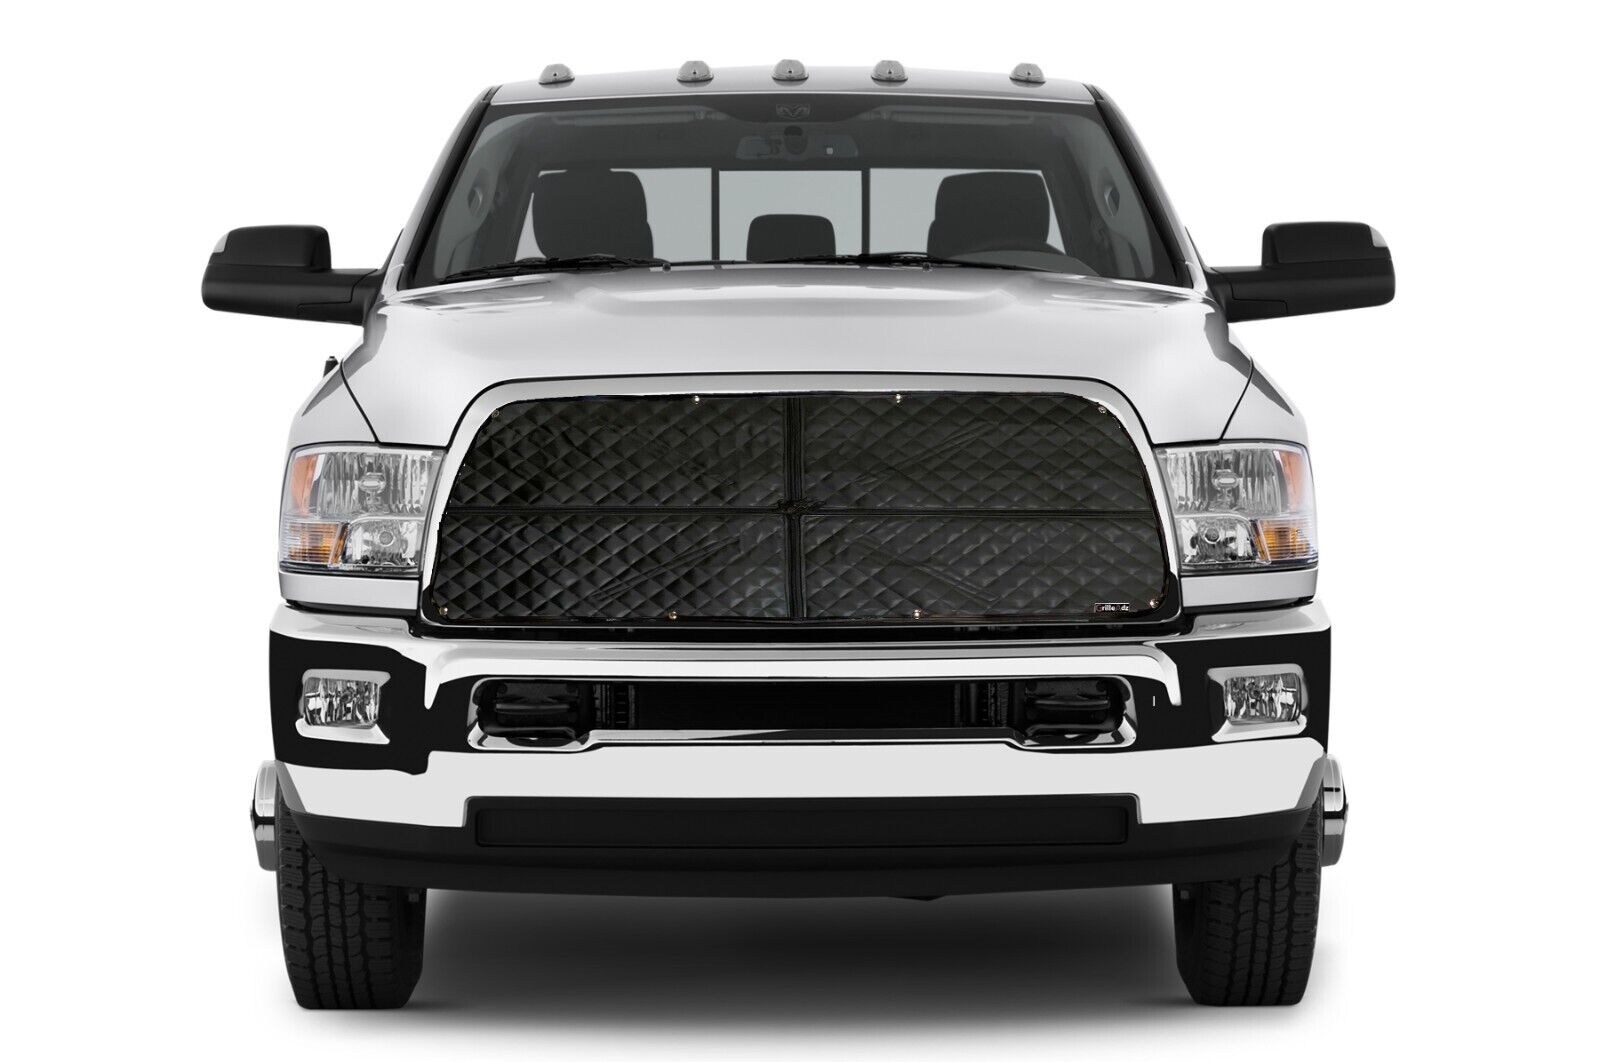 GrilleAdz® Premium Winterfront fits Dodge Ram 2010-2012 2500/3500 903-14